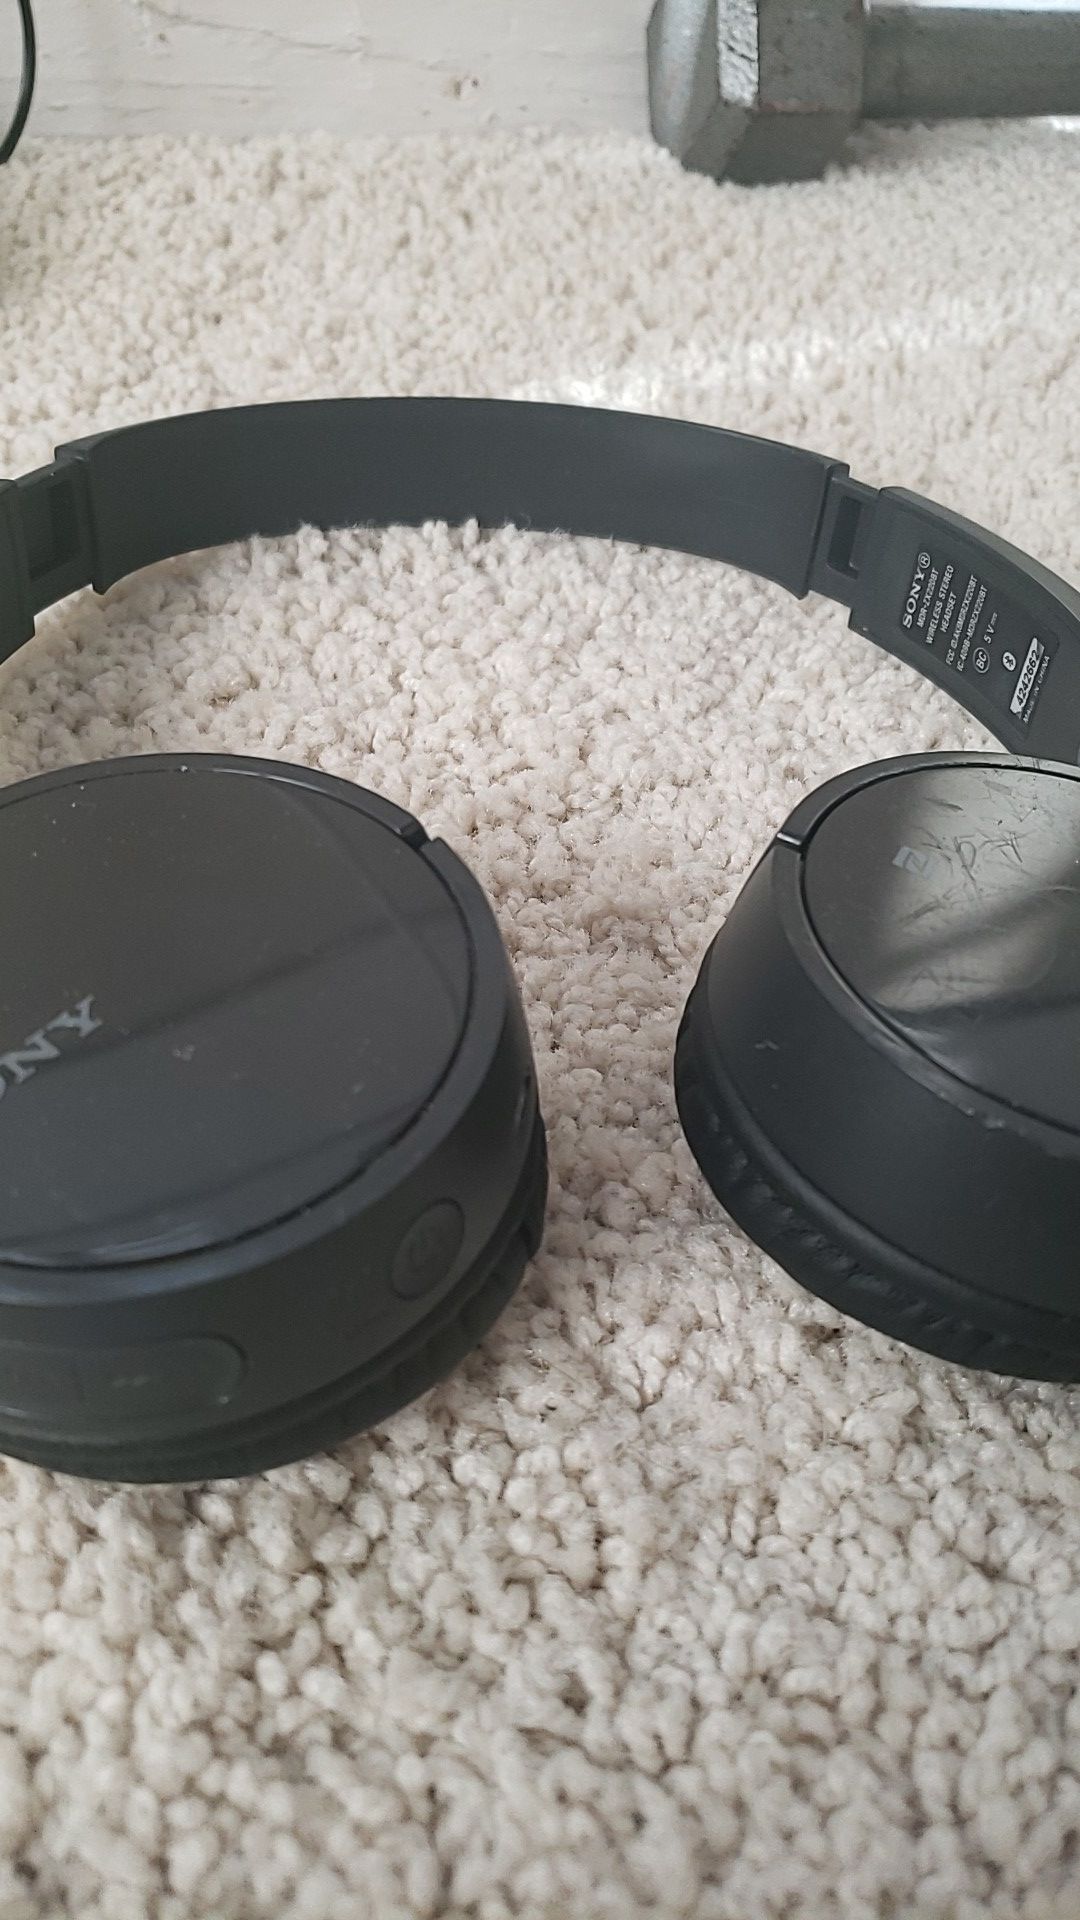 Sony bluetooth headphones